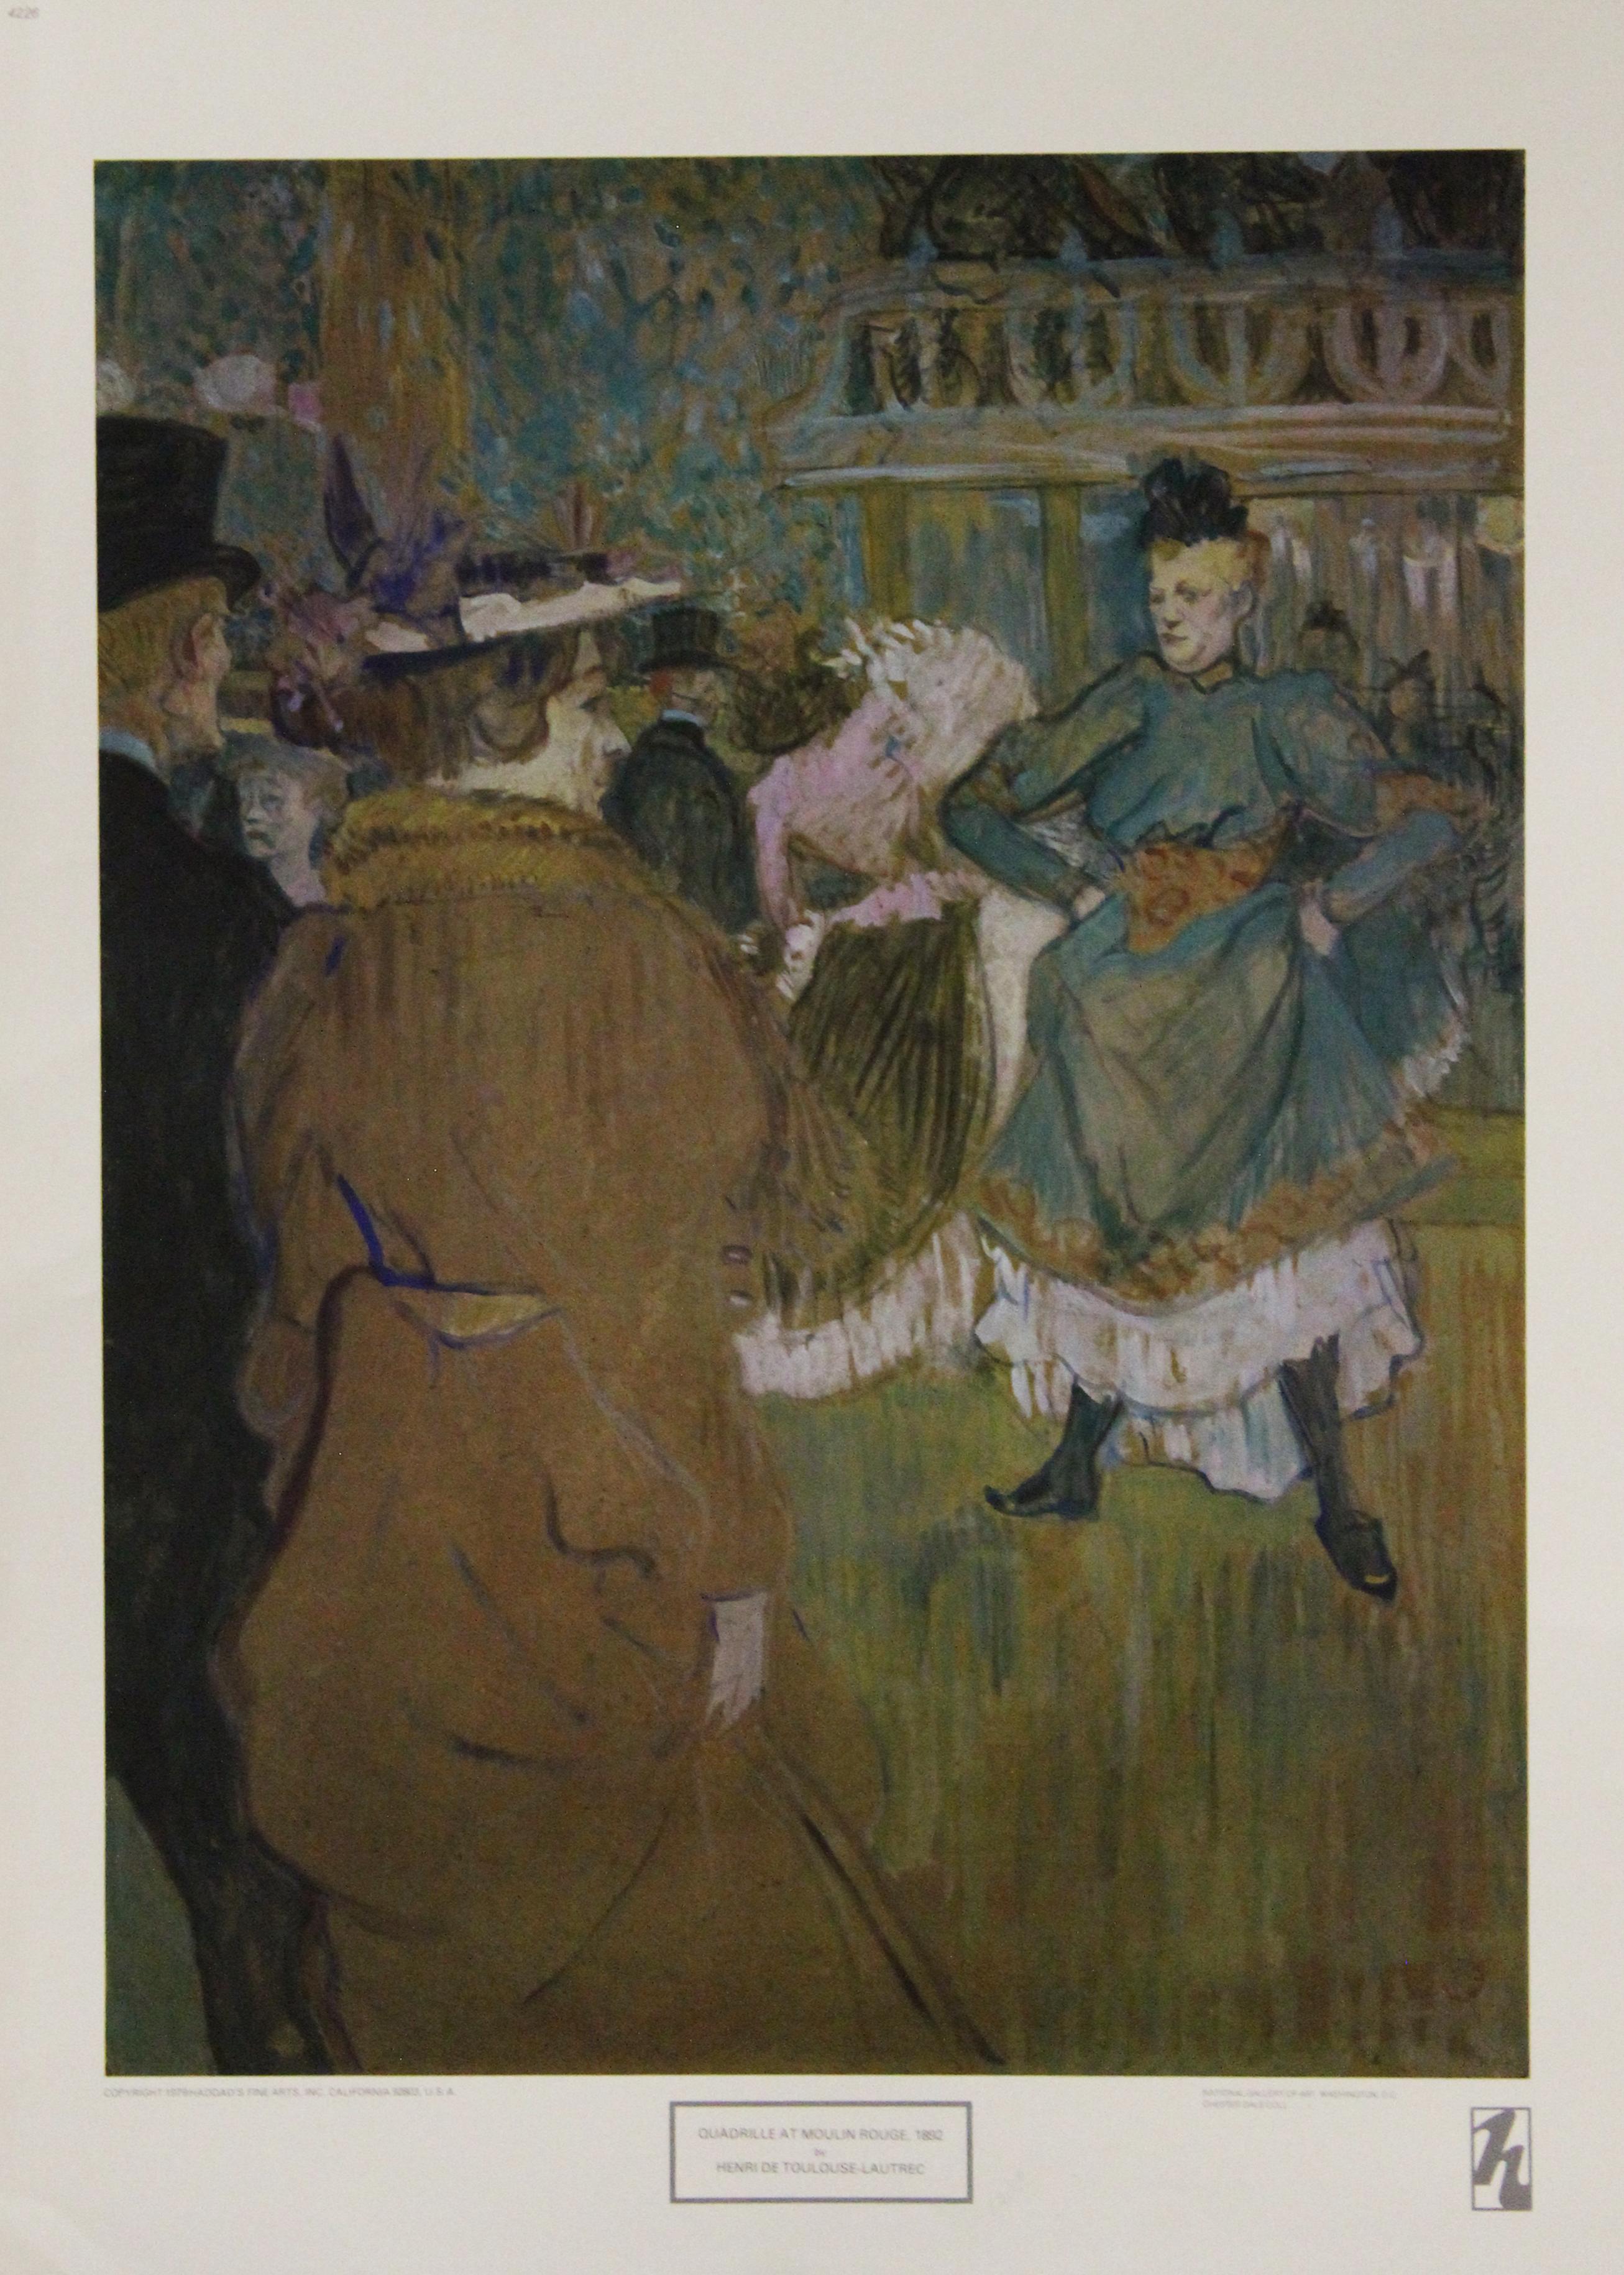 Henri de Toulouse-Lautrec Portrait Print – Quadrille bei Moulin Rouge-Poster. Copyright Haddad's Fine Arts, Inc. 